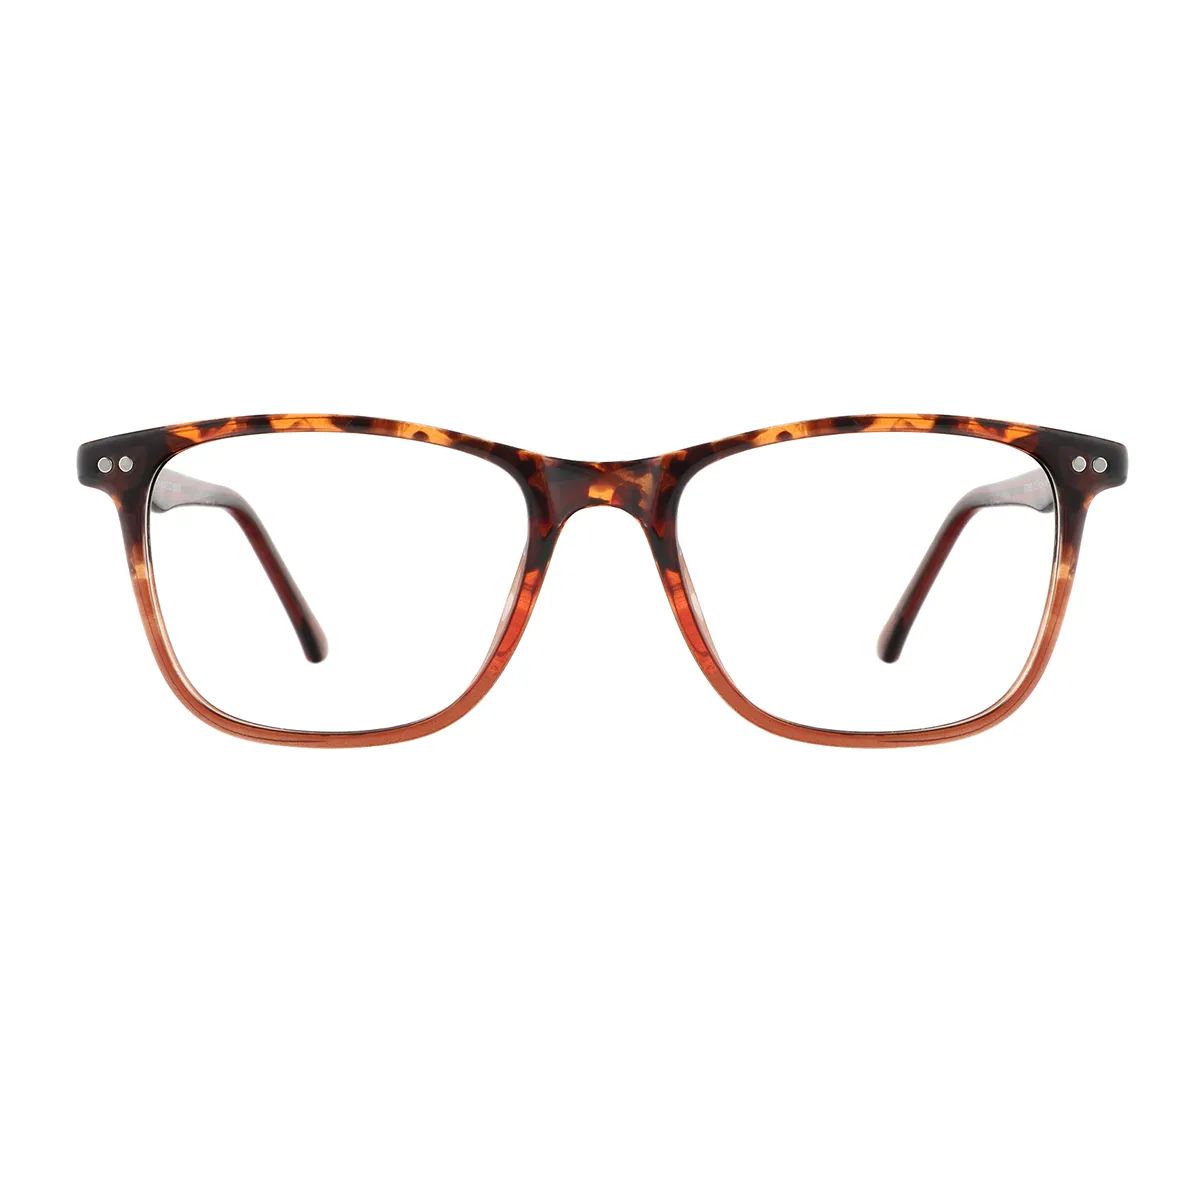 Gibbons - Square Tortoiseshell Glasses for Men & Women